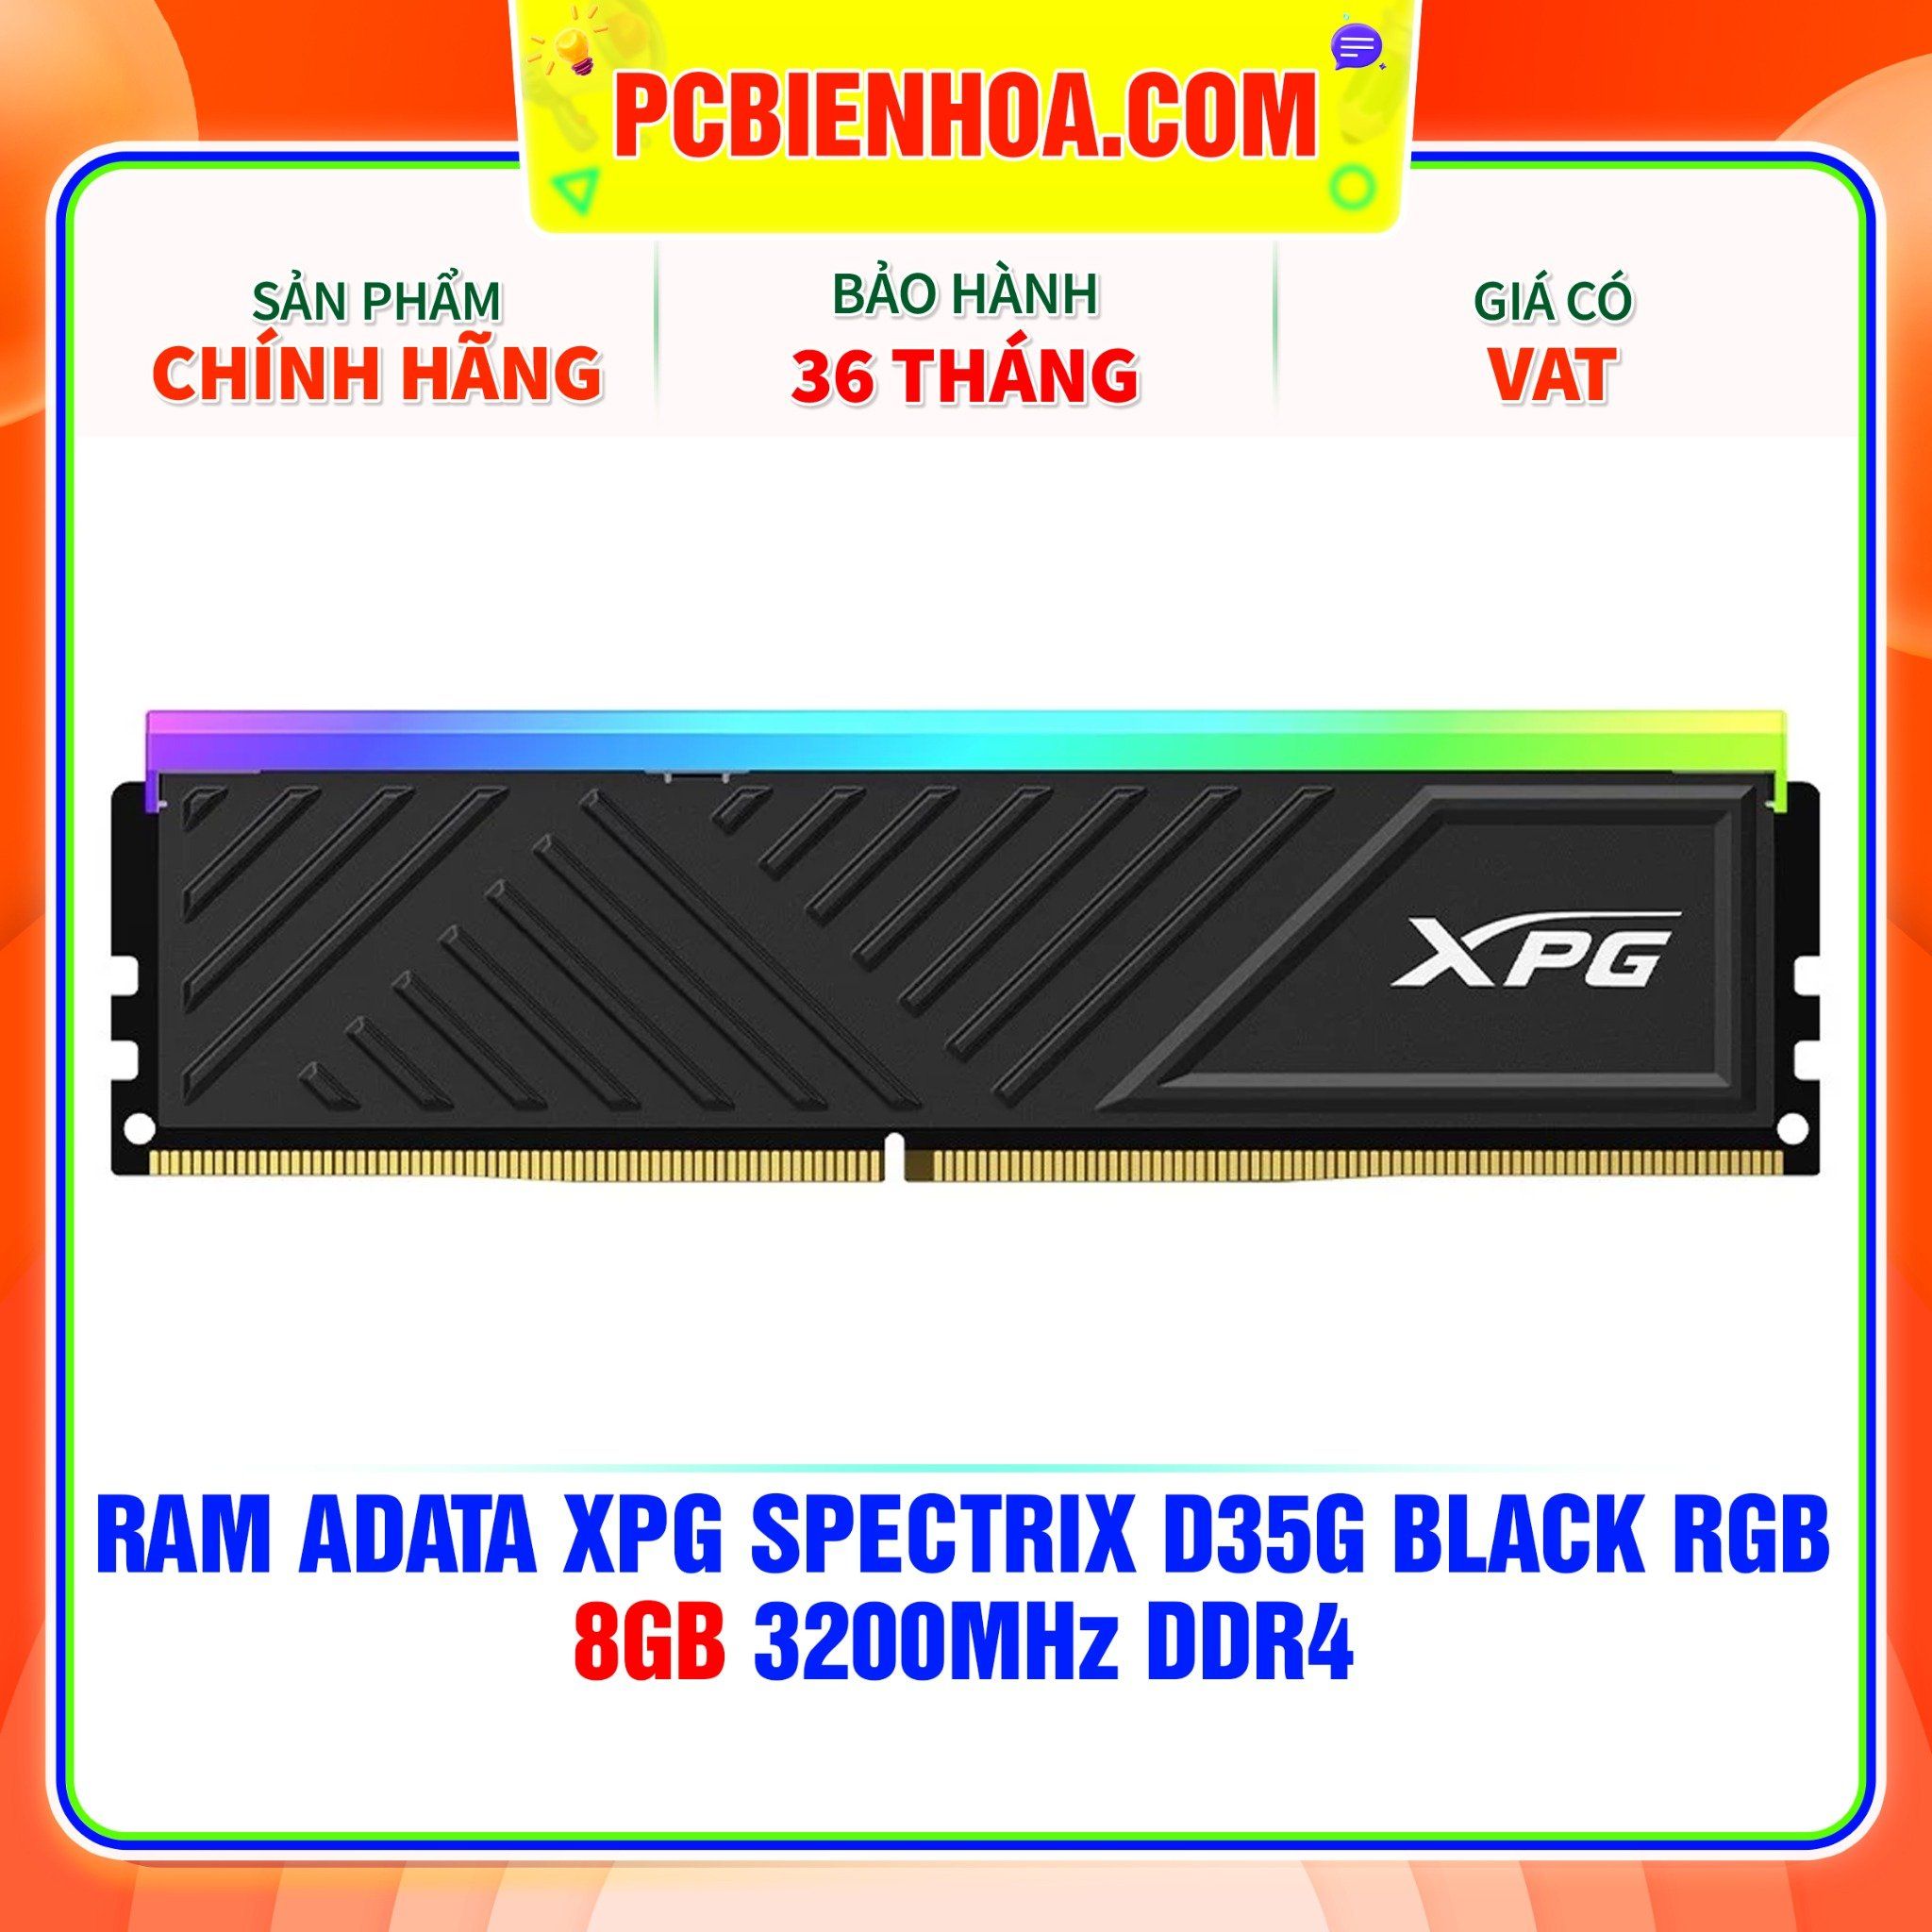  RAM ADATA XPG SPECTRIX D35G BLACK RGB - 8GB 3200MHz DDR4 